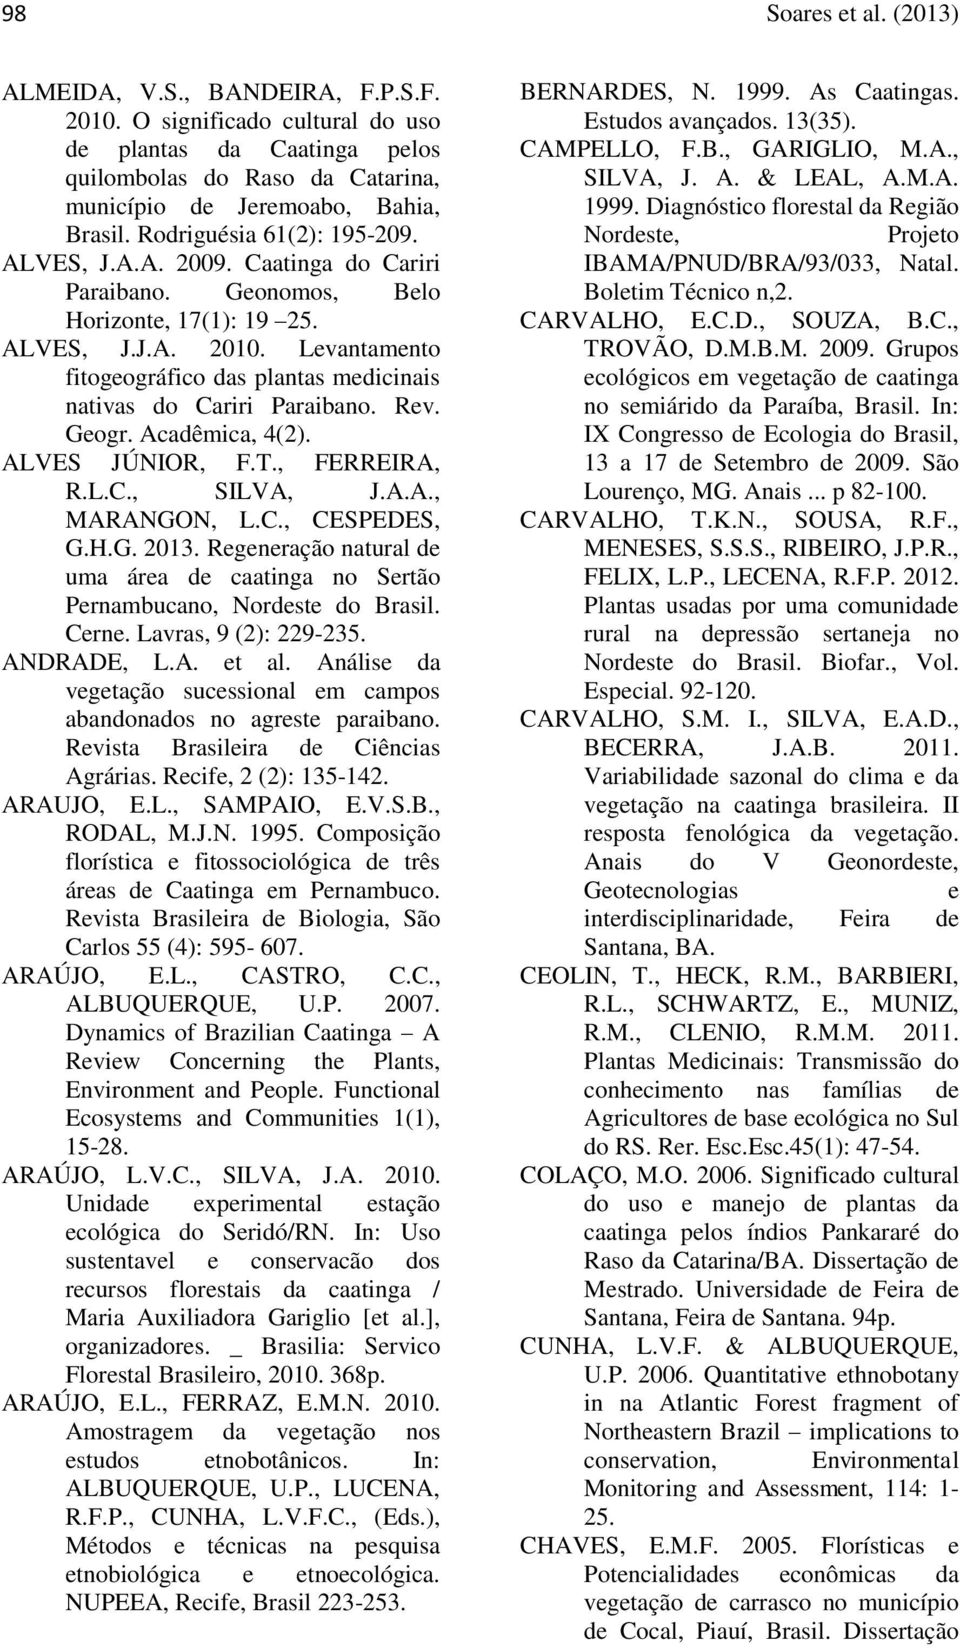 Levantamento fitogeográfico das plantas medicinais nativas do Cariri Paraibano. Rev. Geogr. Acadêmica, 4(2). ALVES JÚNIOR, F.T., FERREIRA, R.L.C., SILVA, J.A.A., MARANGON, L.C., CESPEDES, G.H.G. 2013.